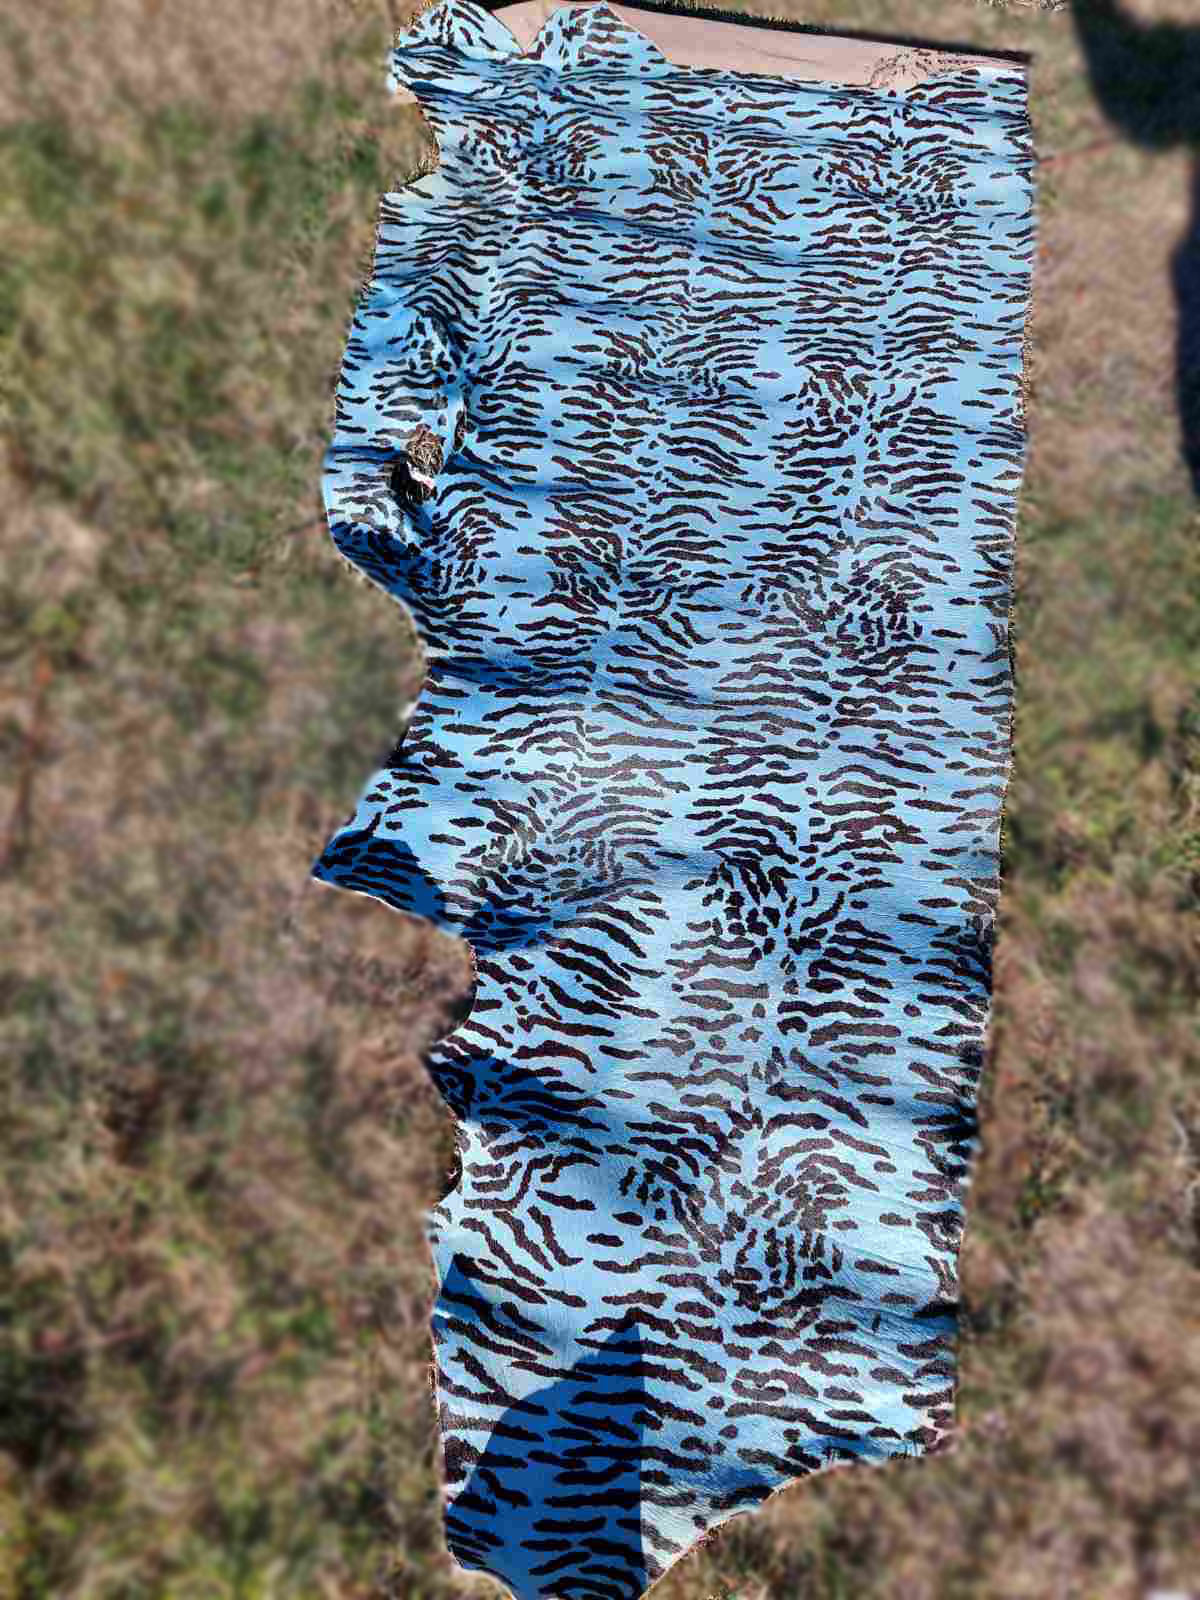 Blue Zebra Printed Hair-On Cowhide - 1/2 Hide